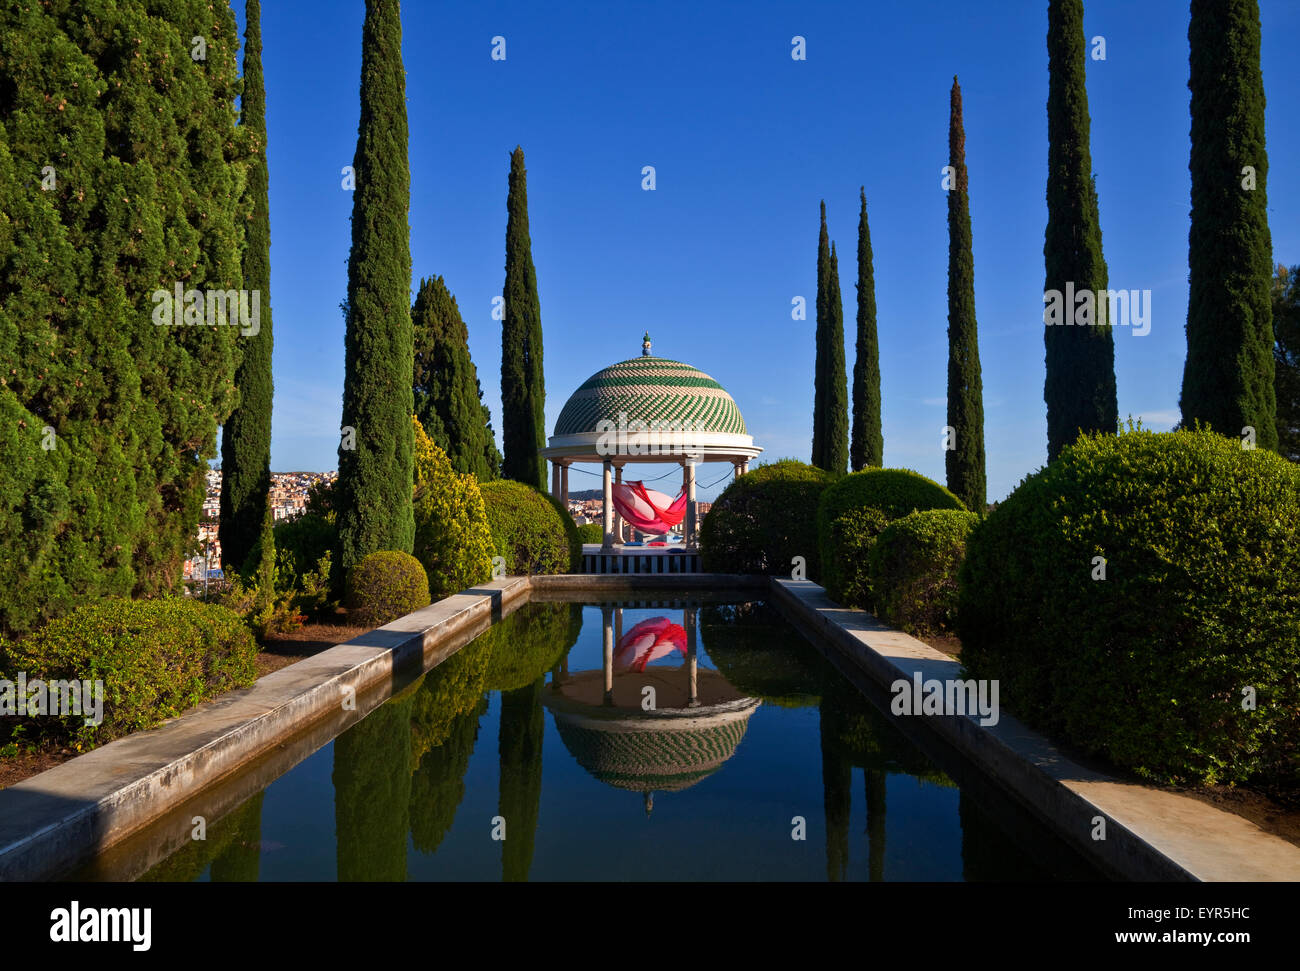 Pool und Tempel mit Kunstinstallation, Botanischer Garten oder Jardin Botanico De La Concepcion, Malaga, Andalusien, Spanien. Stockfoto